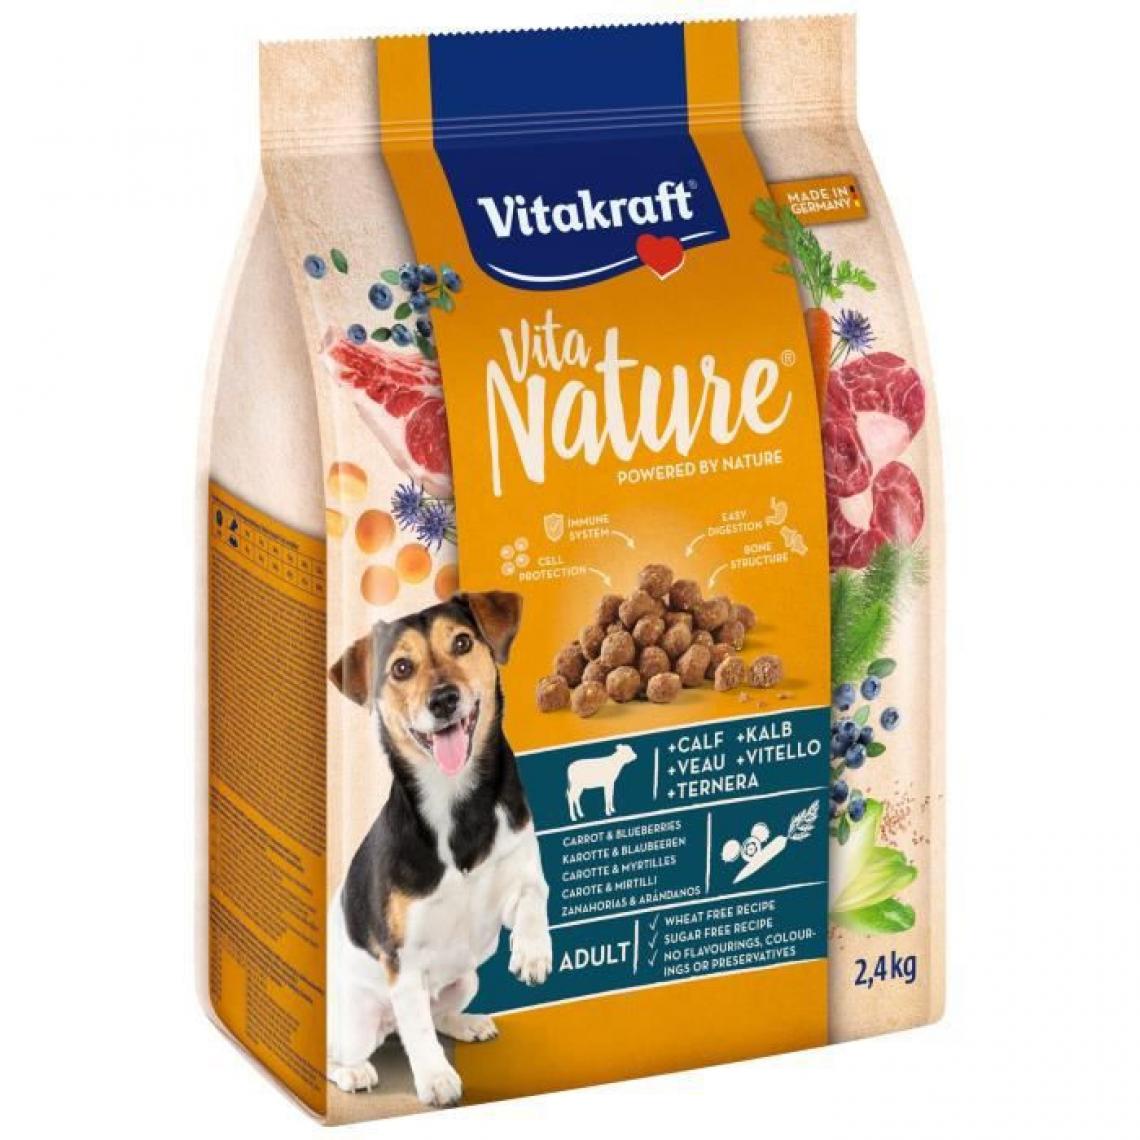 Vitakraft - VITAKRAFT Vita Nature Croquettes pour chien au Poulet avec betterave et Amarante - Lot de 3x2,4 kg - Croquettes pour chien